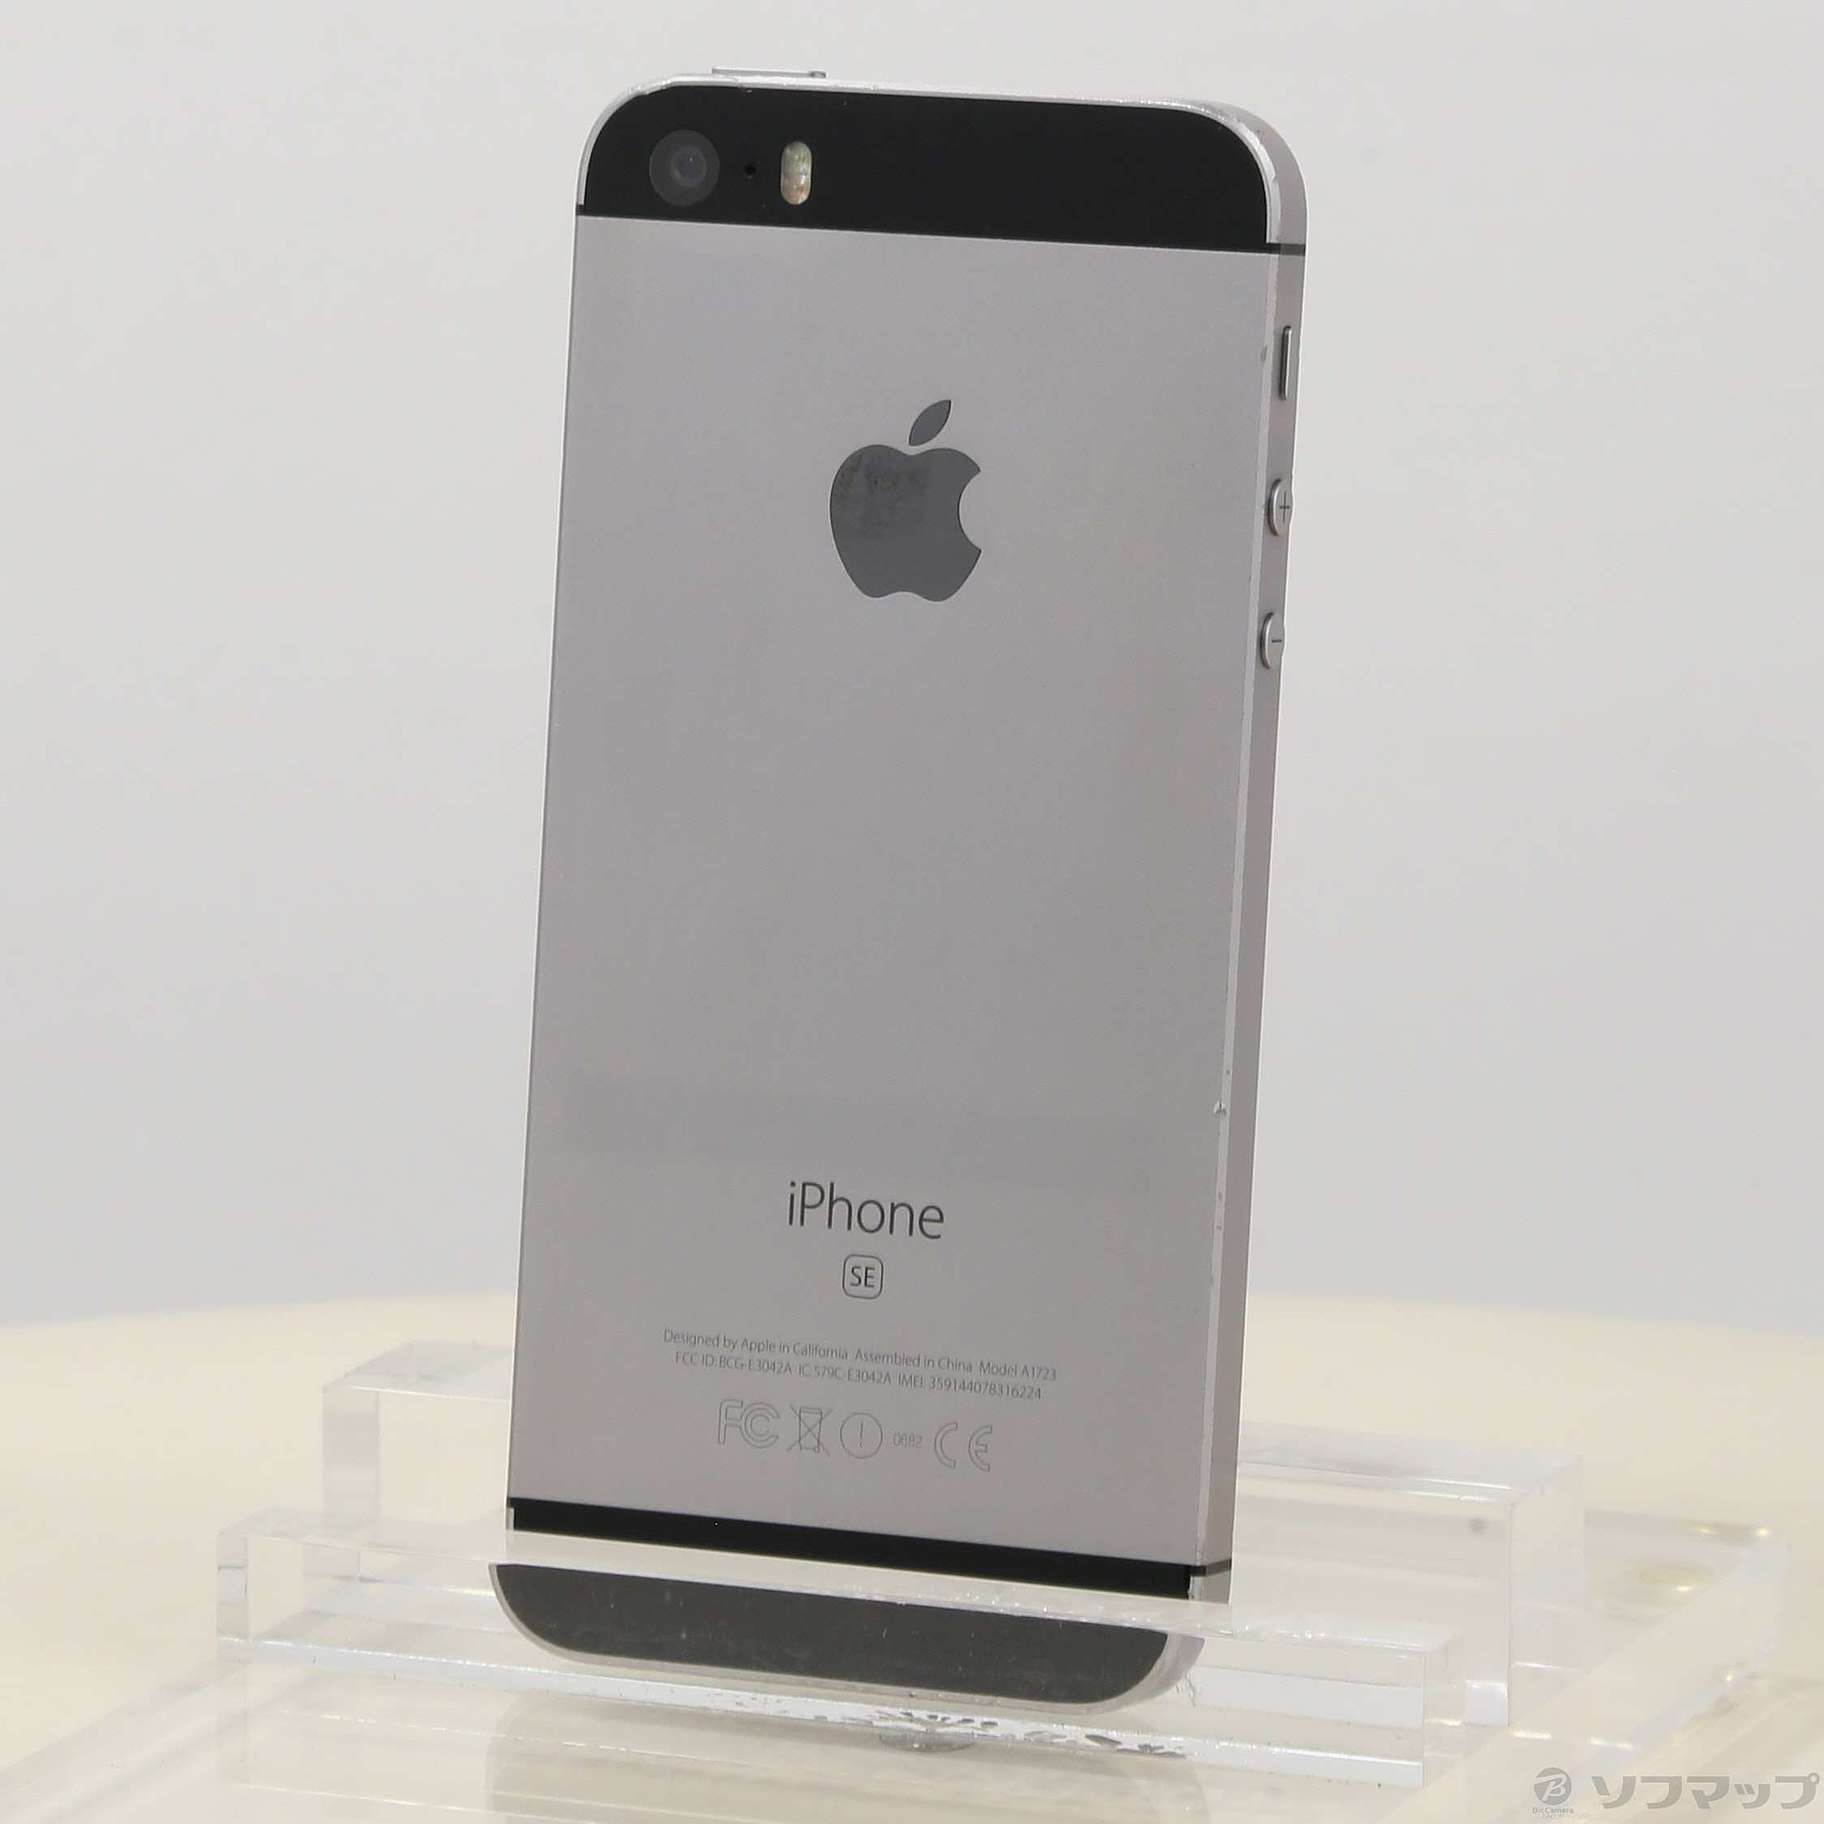 iPhone SE Space Gray 16 GB SIMフリースマートフォン/携帯電話